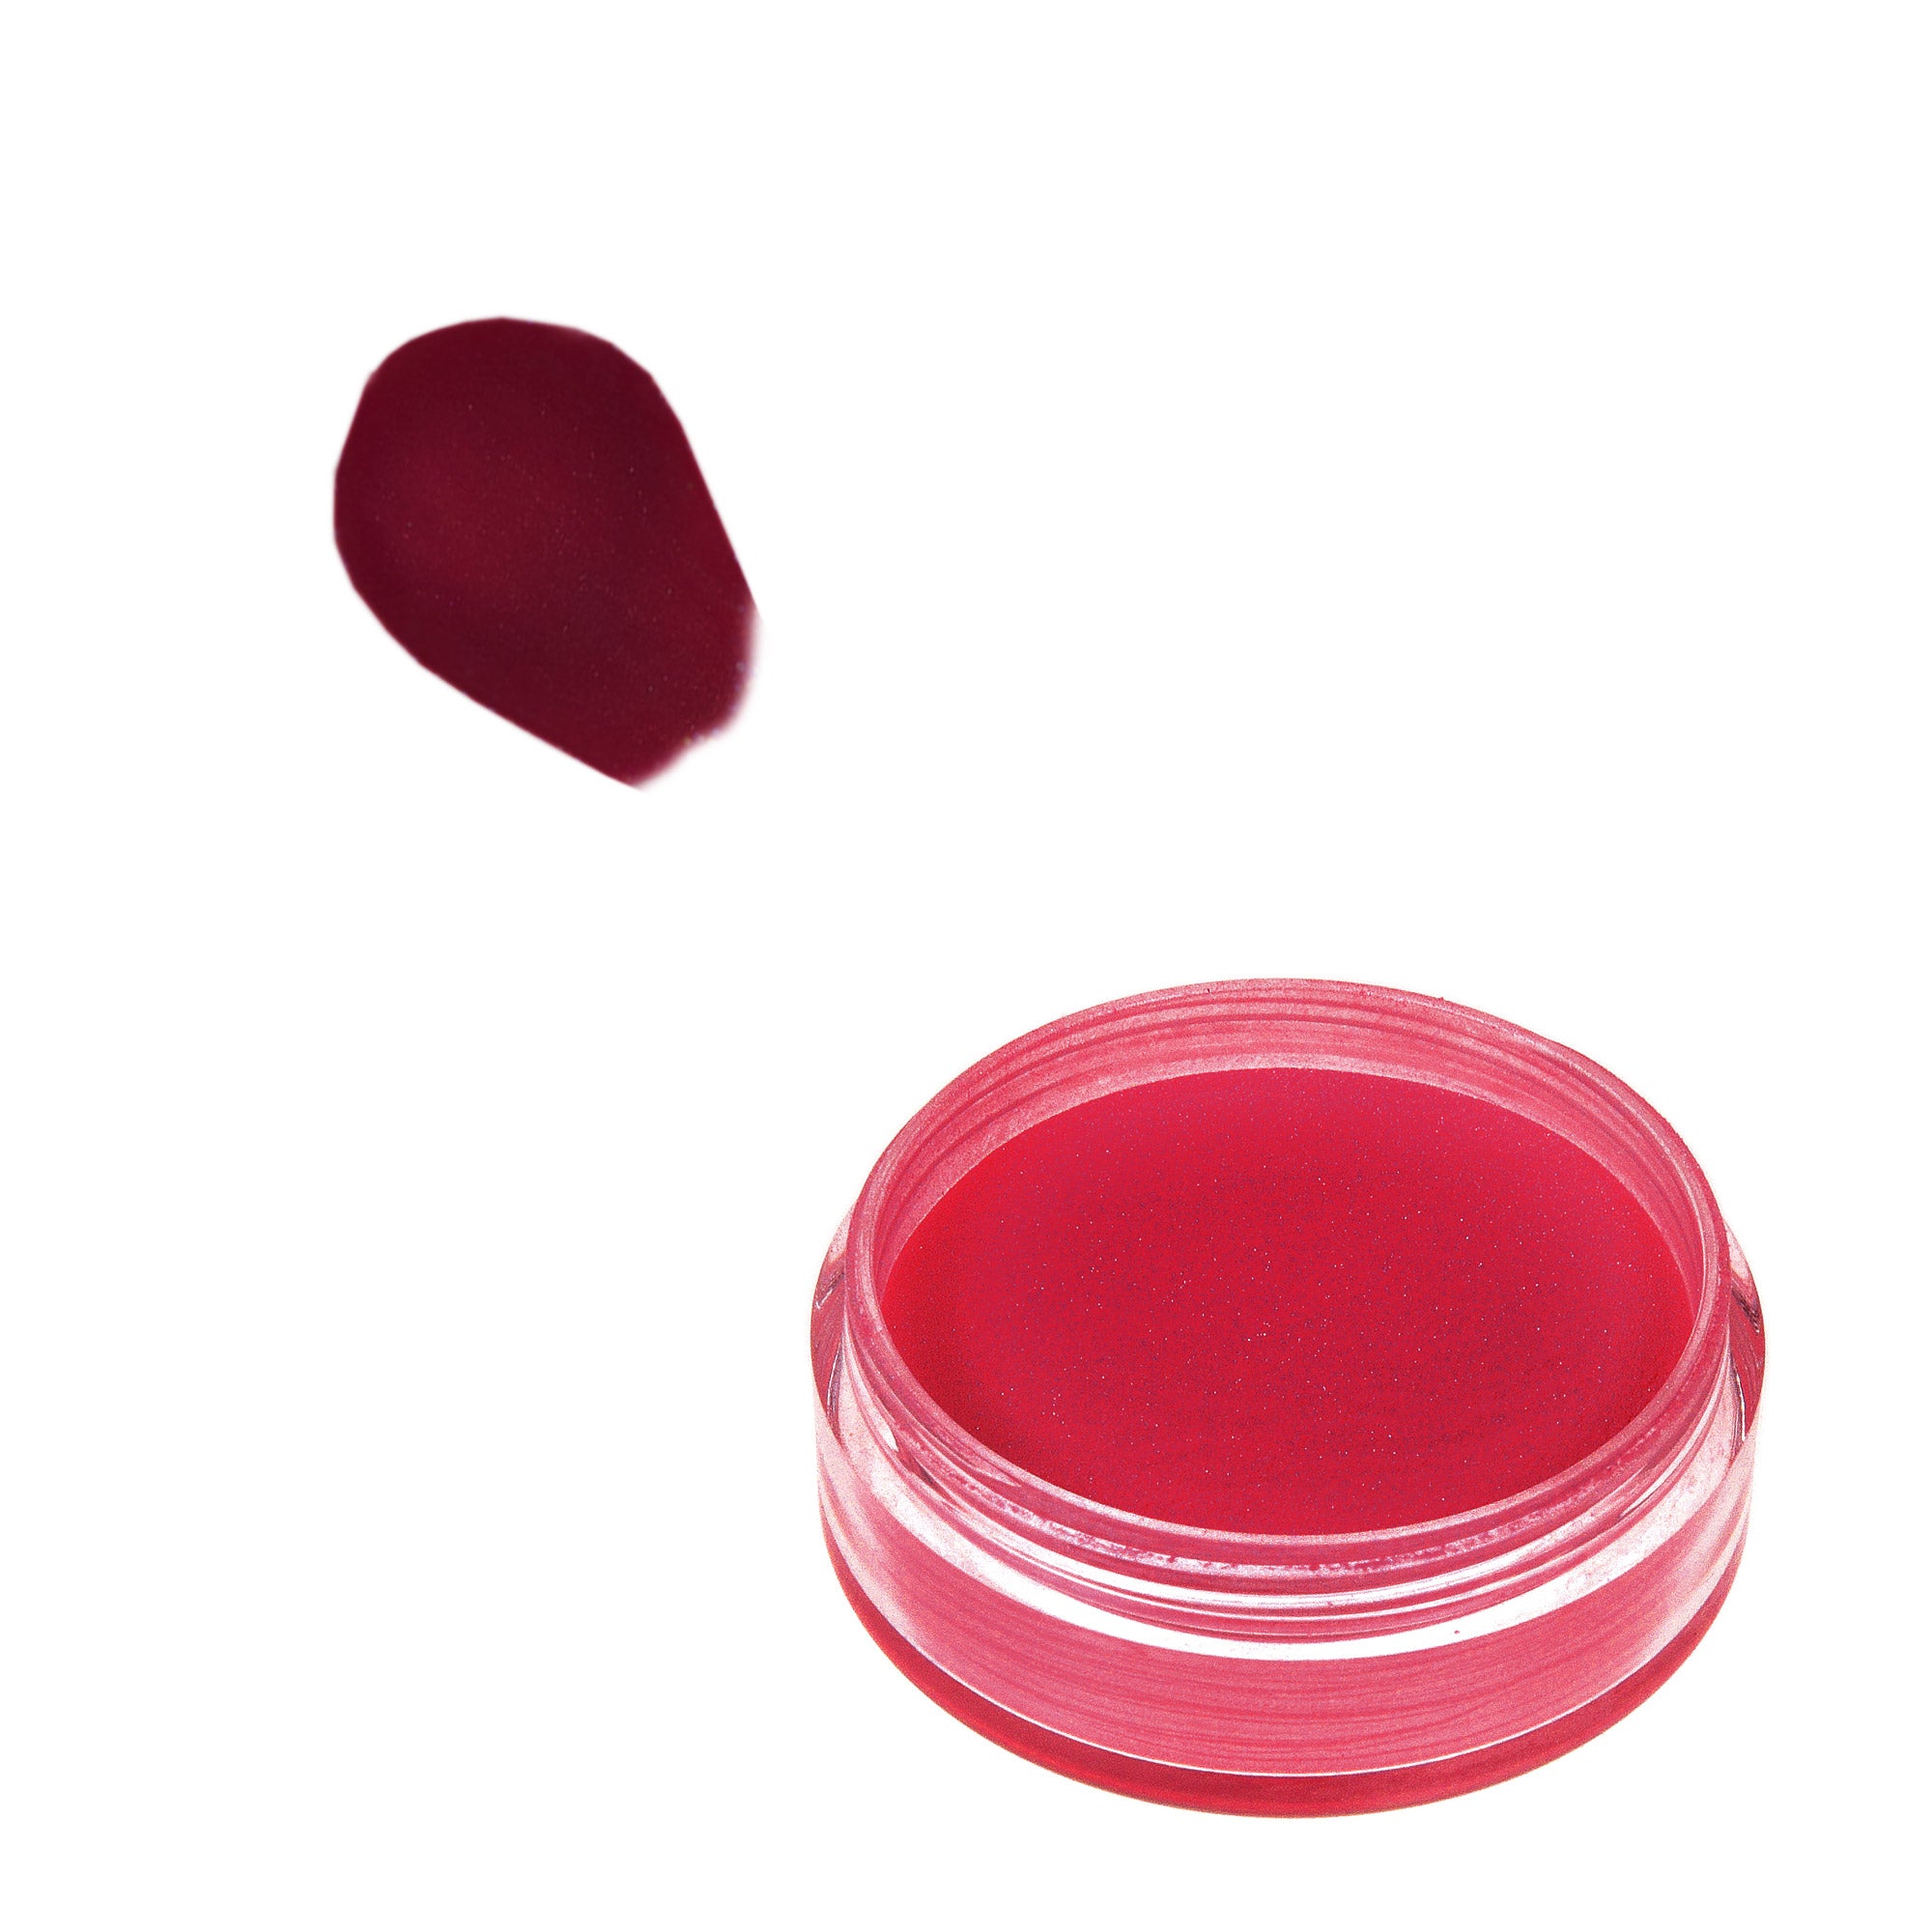 Acrylic Powder 10 g. - Red